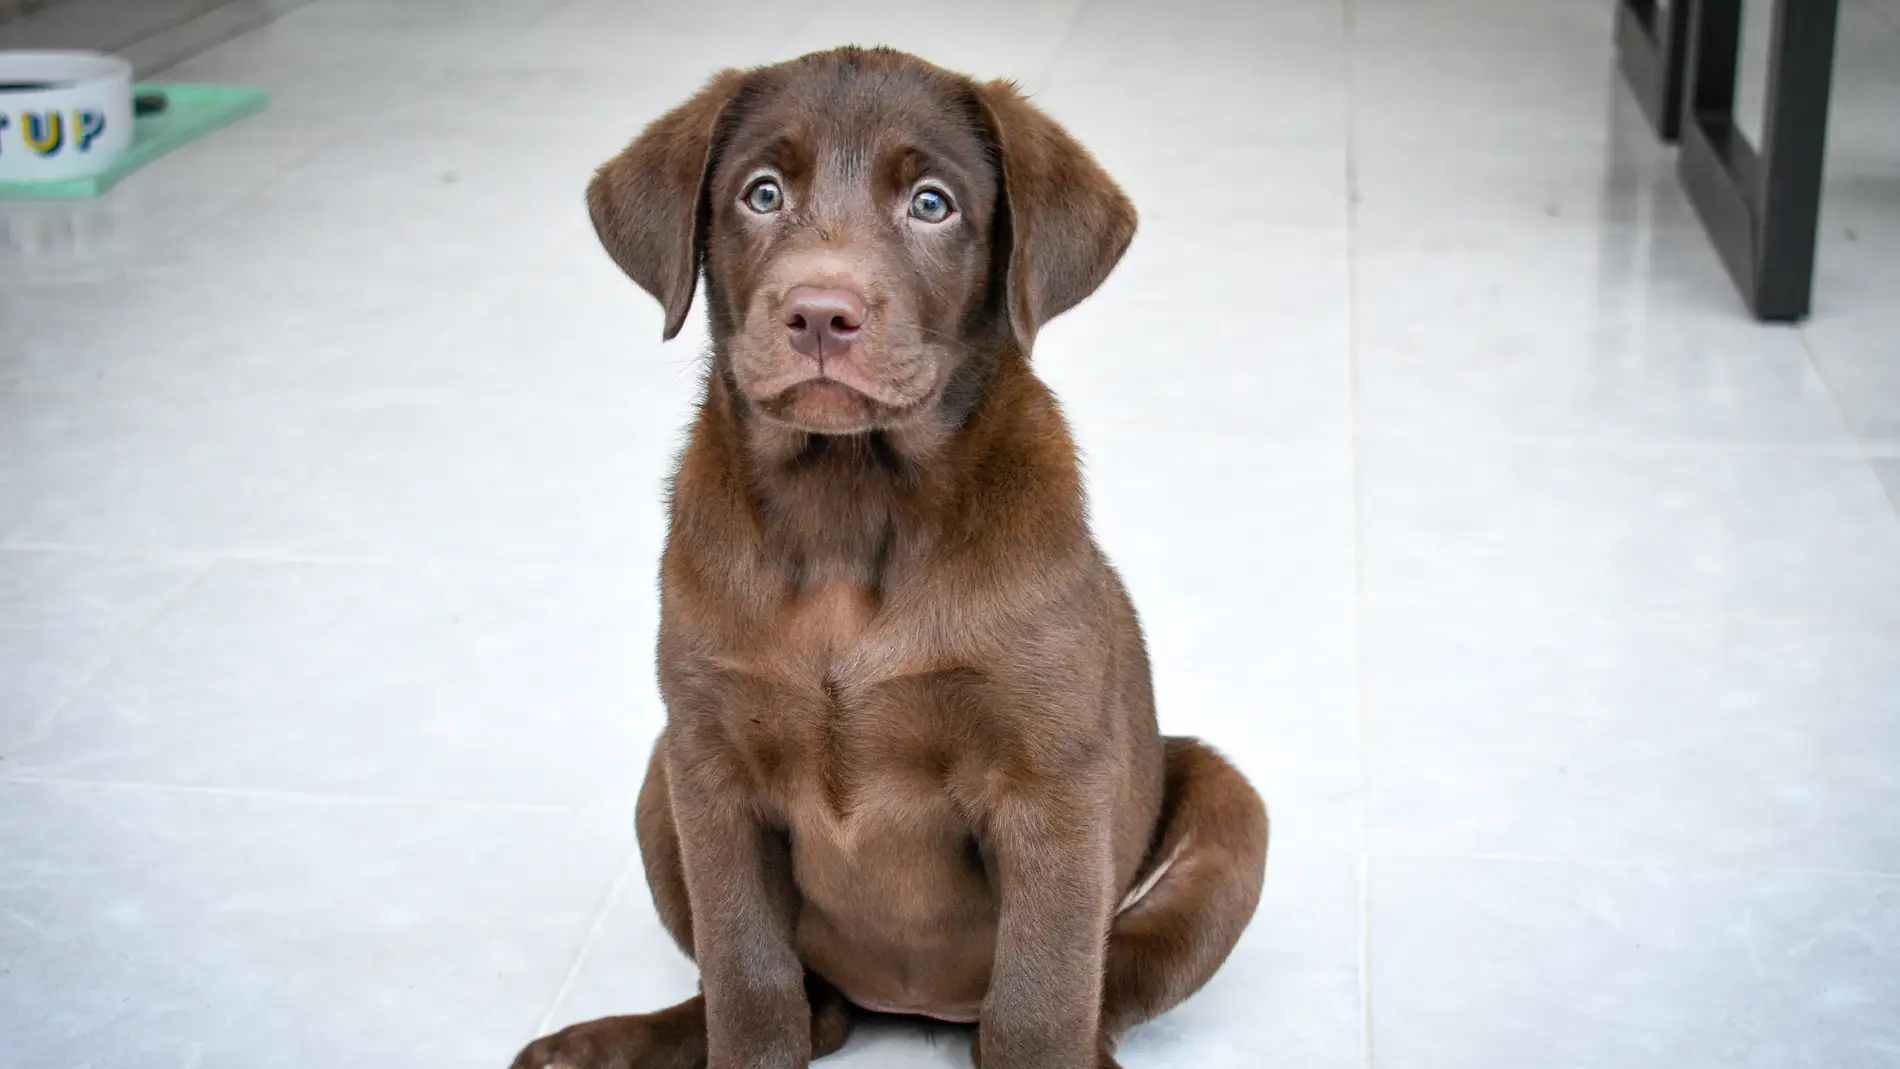 Ley animal: ¿estoy obligado a hacer el nuevo curso si ya tengo perro?